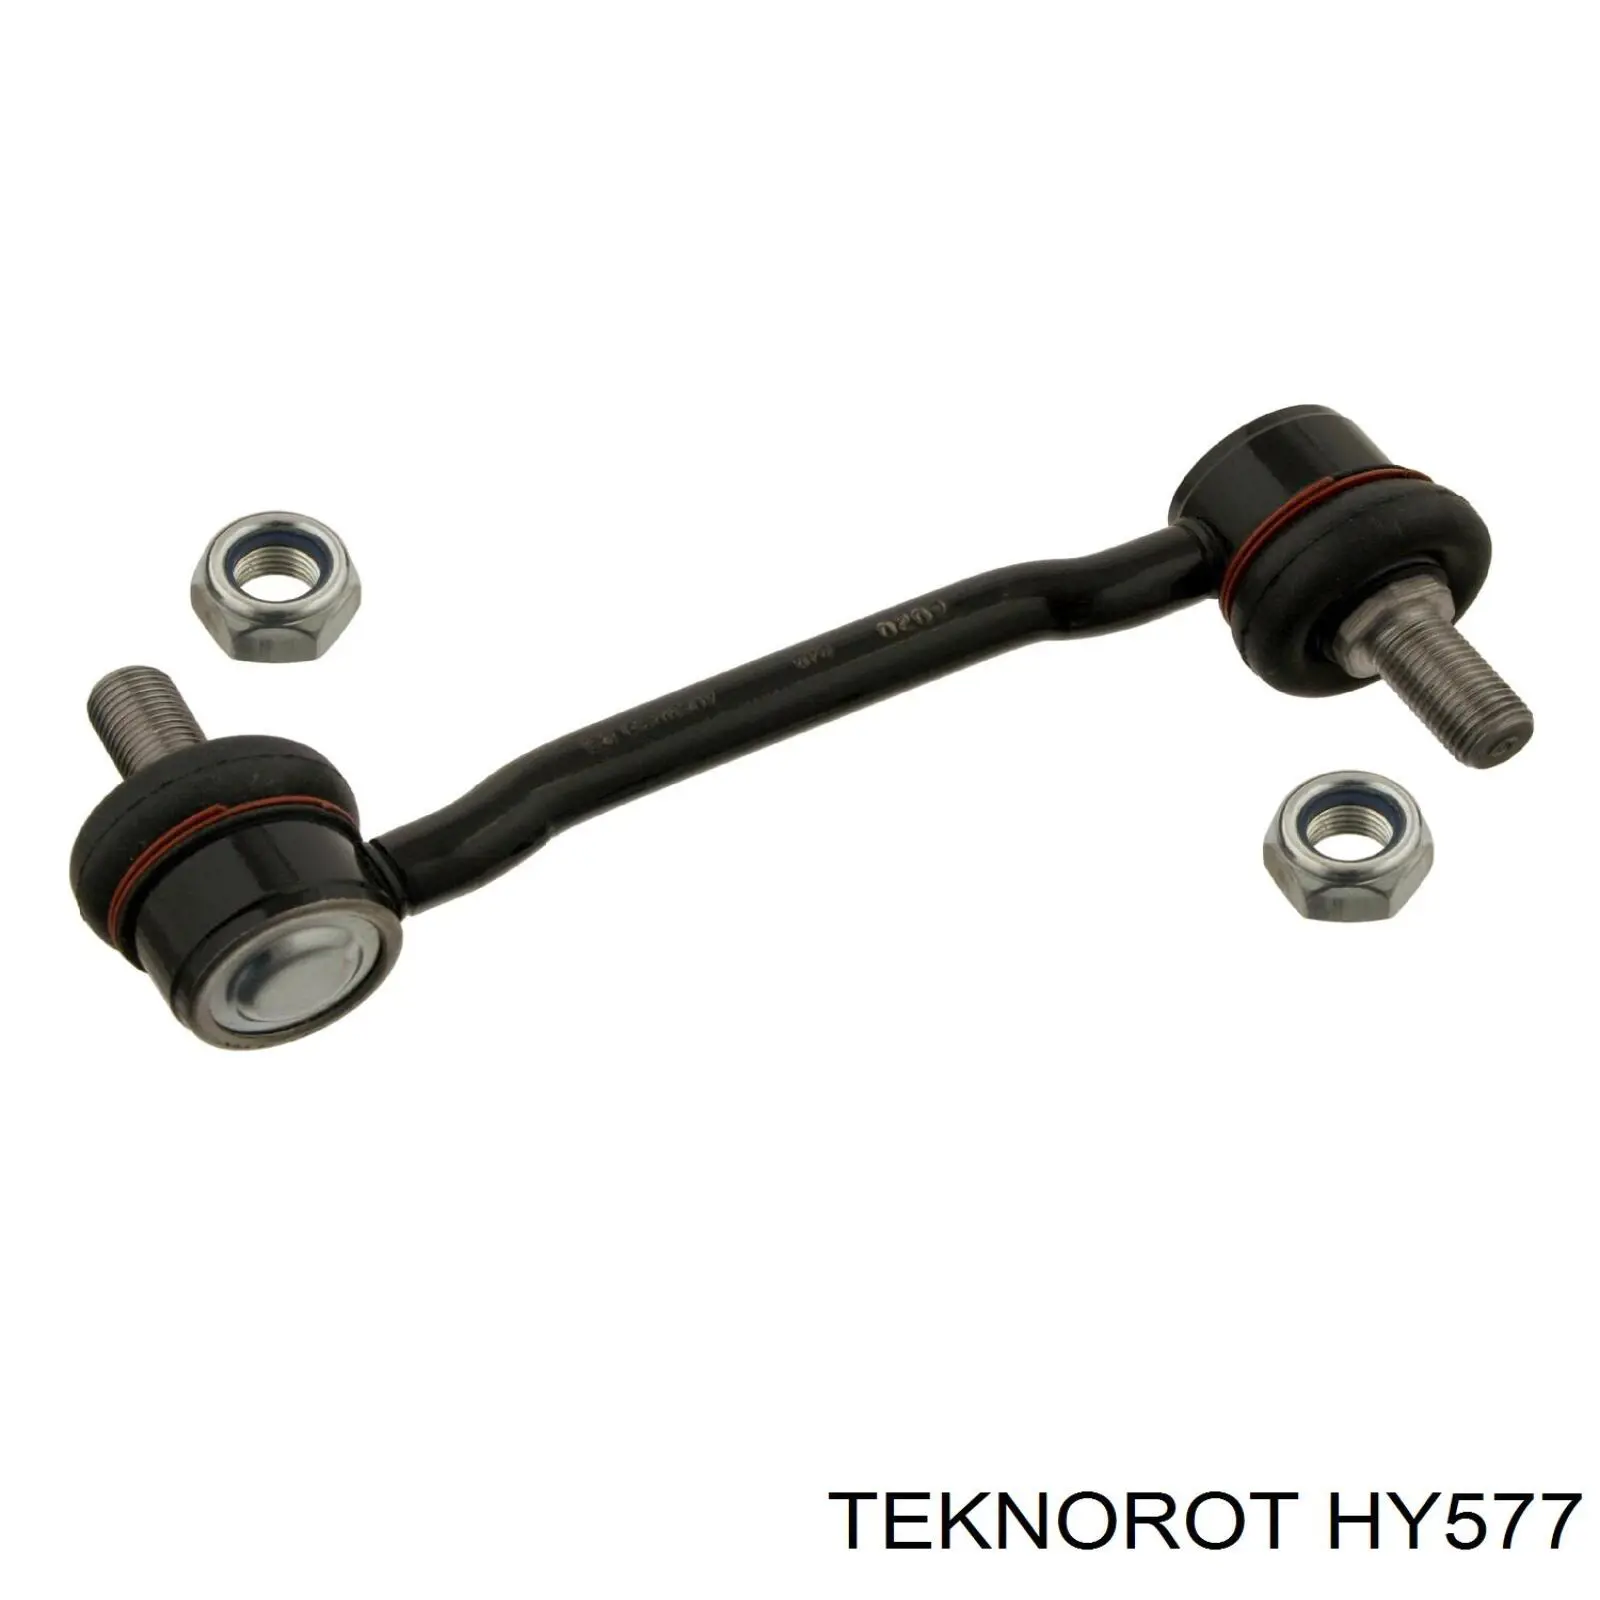 HY577 Teknorot soporte de barra estabilizadora delantera